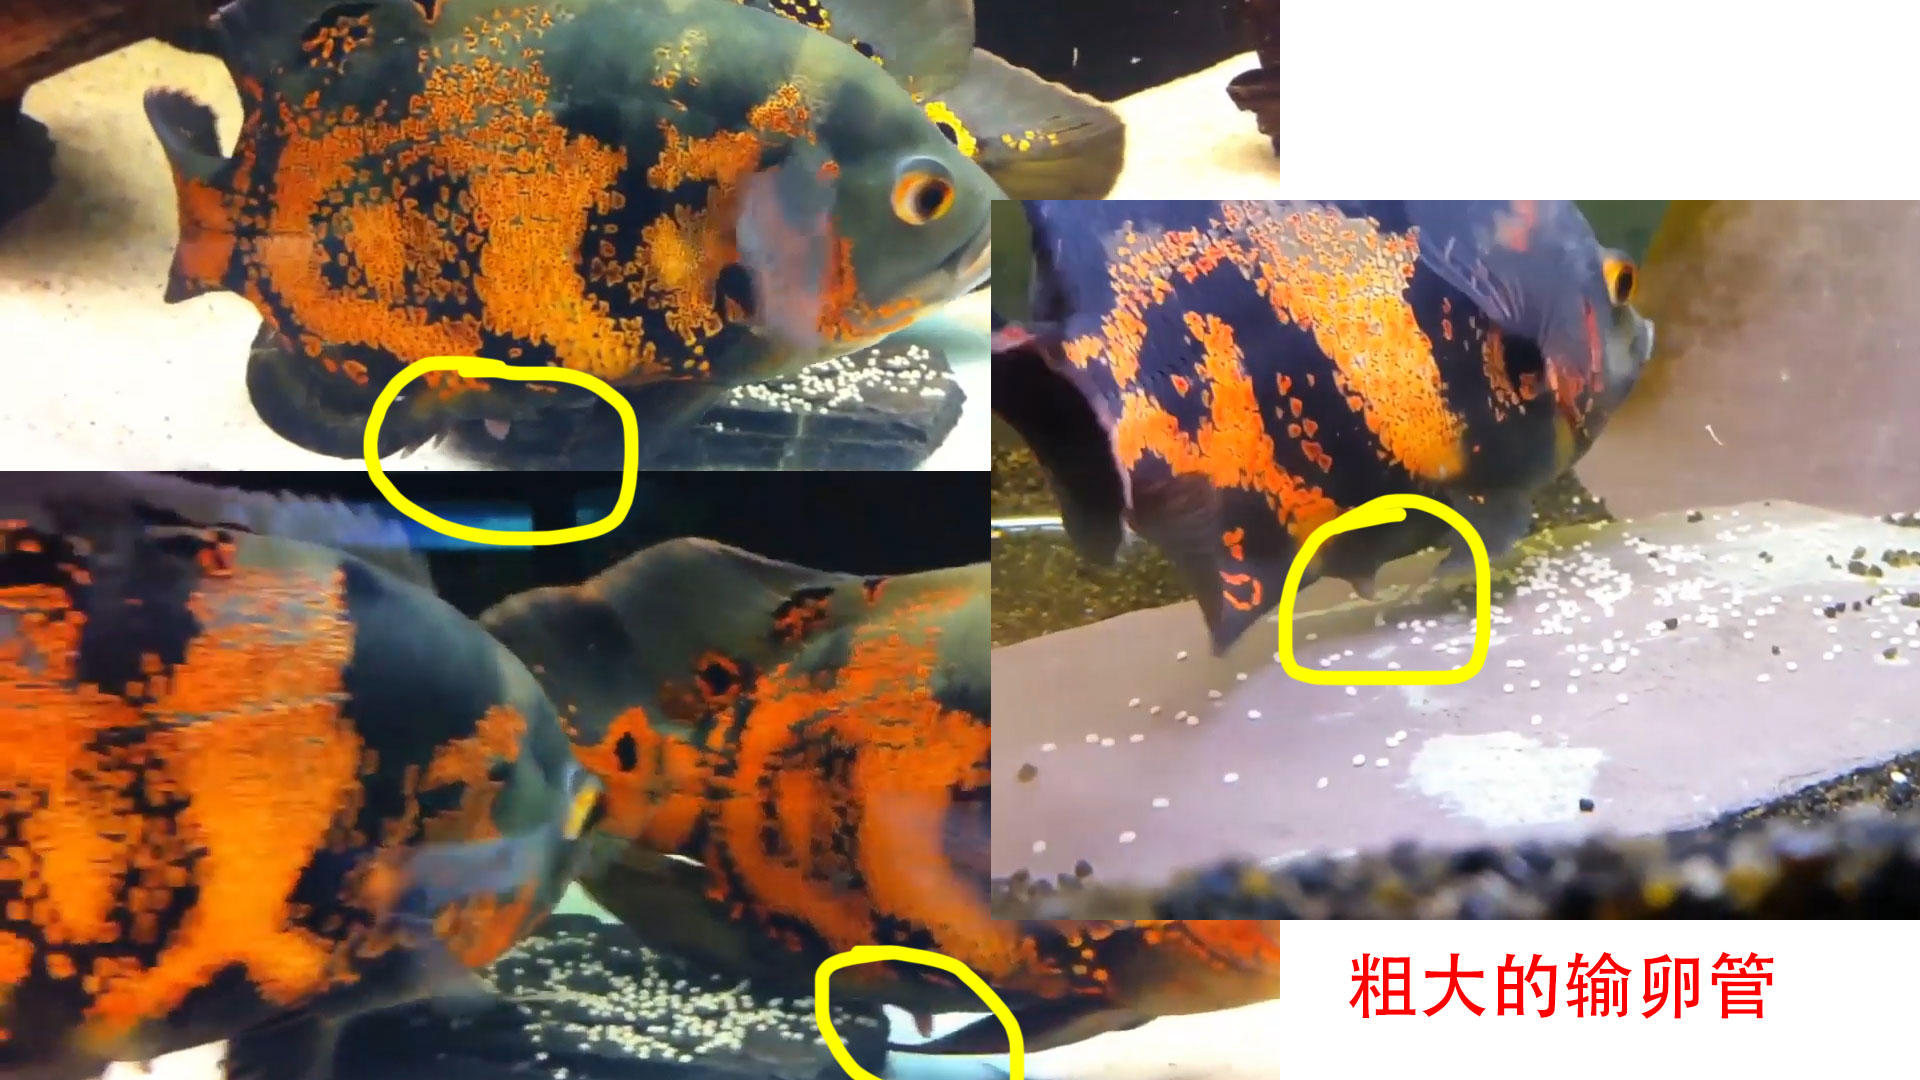 红鲫鱼公母区分图解图片